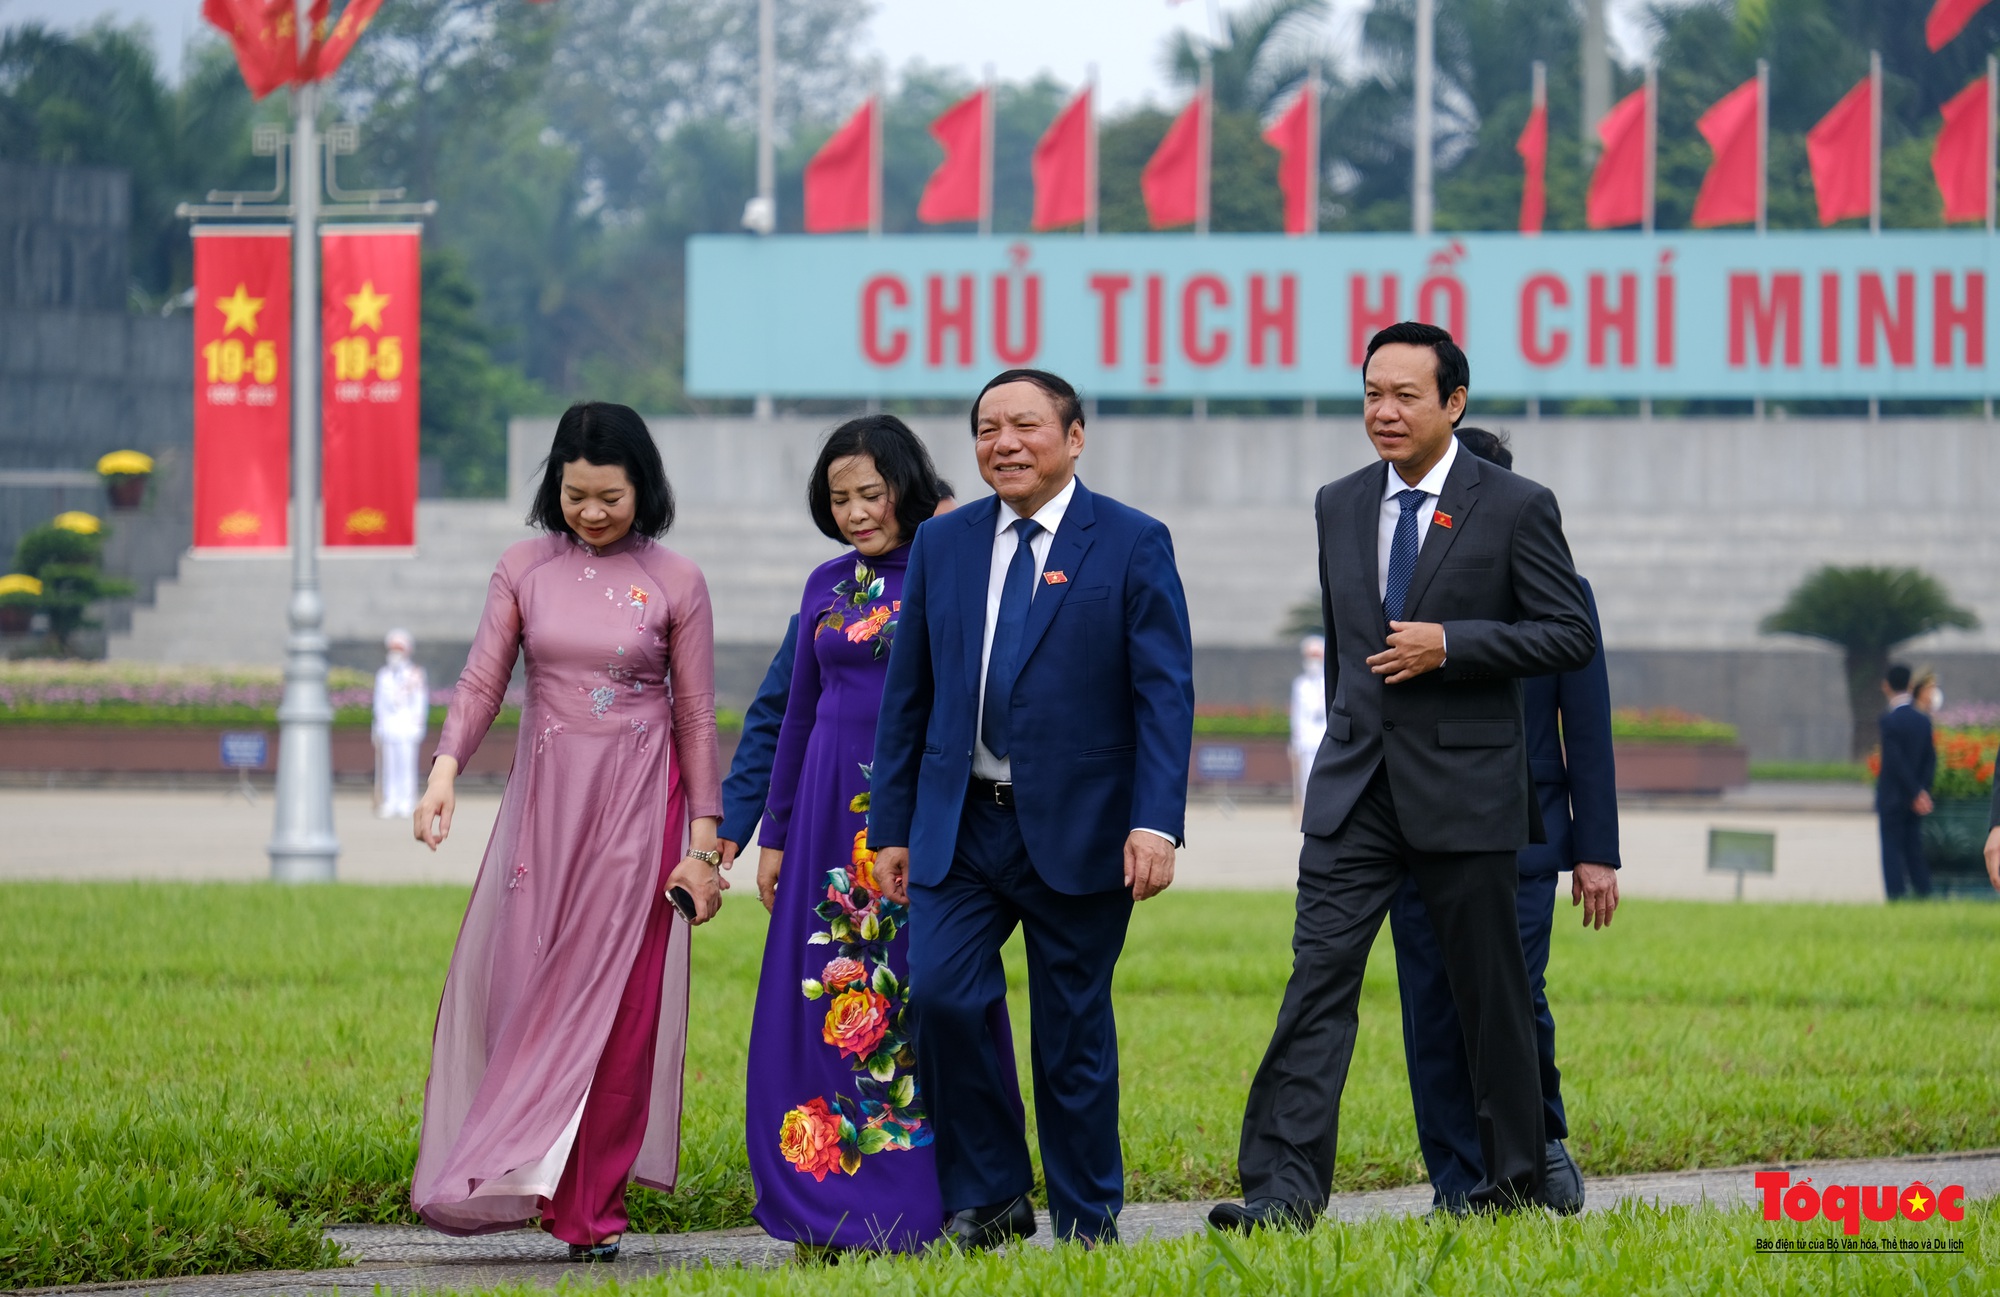 Lãnh đạo Đảng, Nhà nước và các đại biểu Quốc hội vào Lăng viếng Chủ tịch Hồ Chí Minh - Ảnh 12.